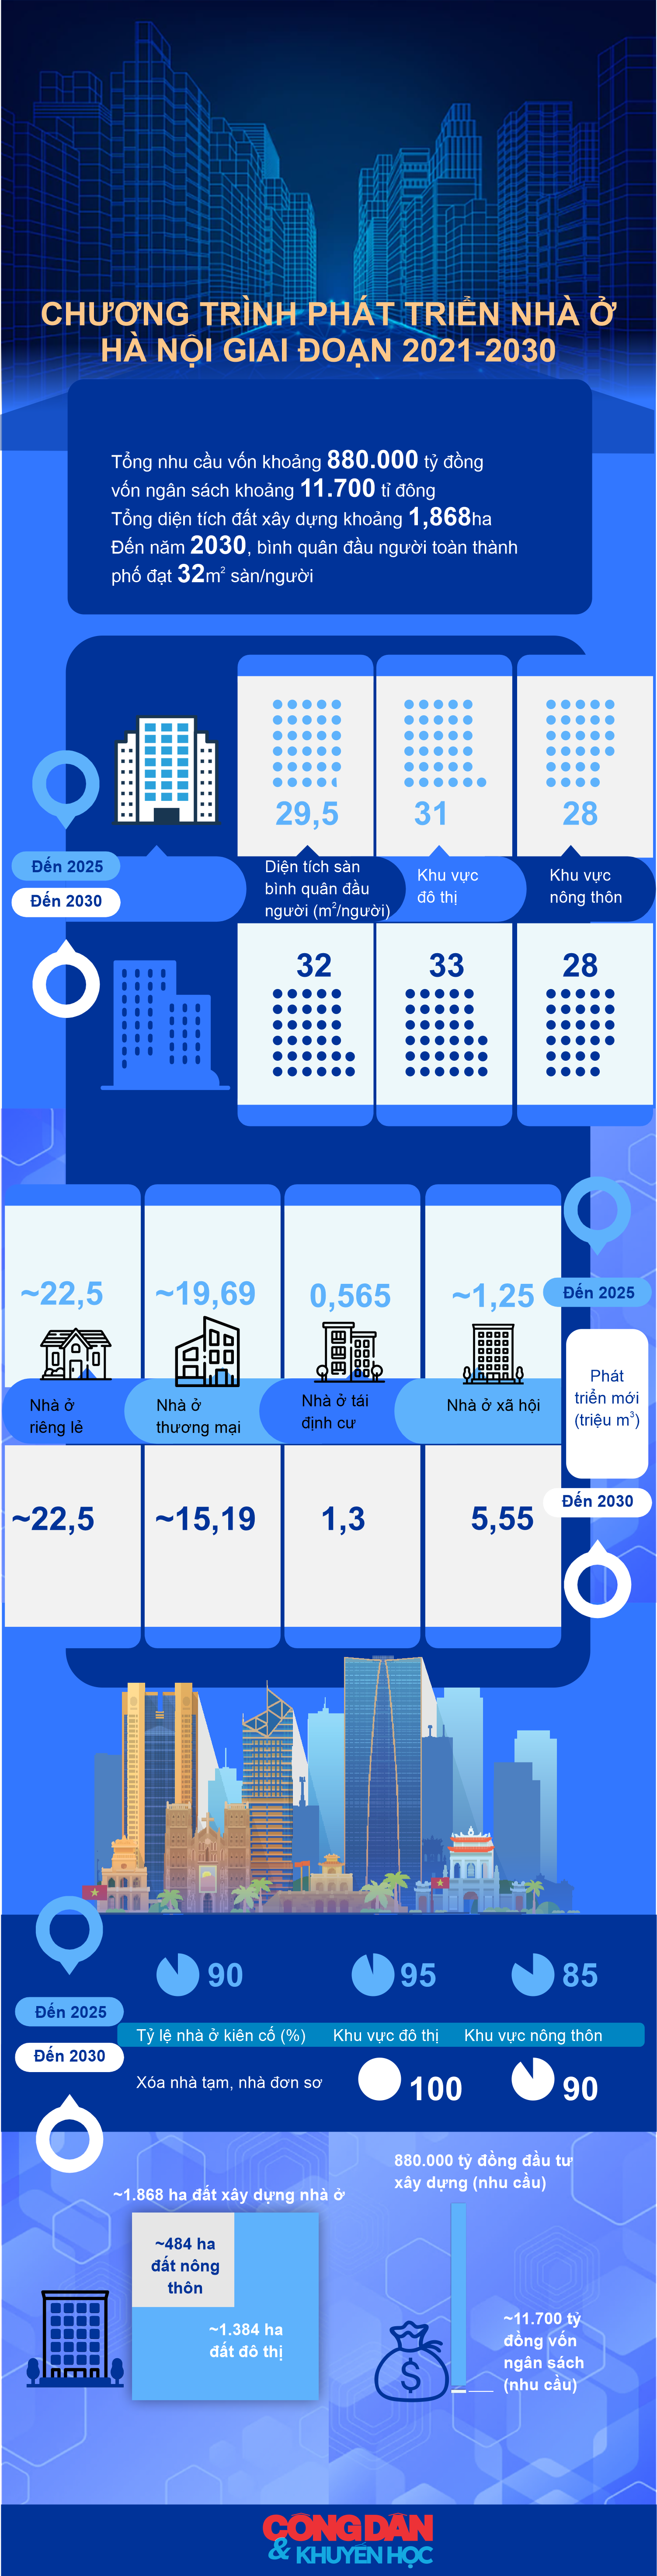 [Infographic] Hà Nội: Chương trình phát triển nhà ở giai đoạn 2021-2030 - Ảnh 1.